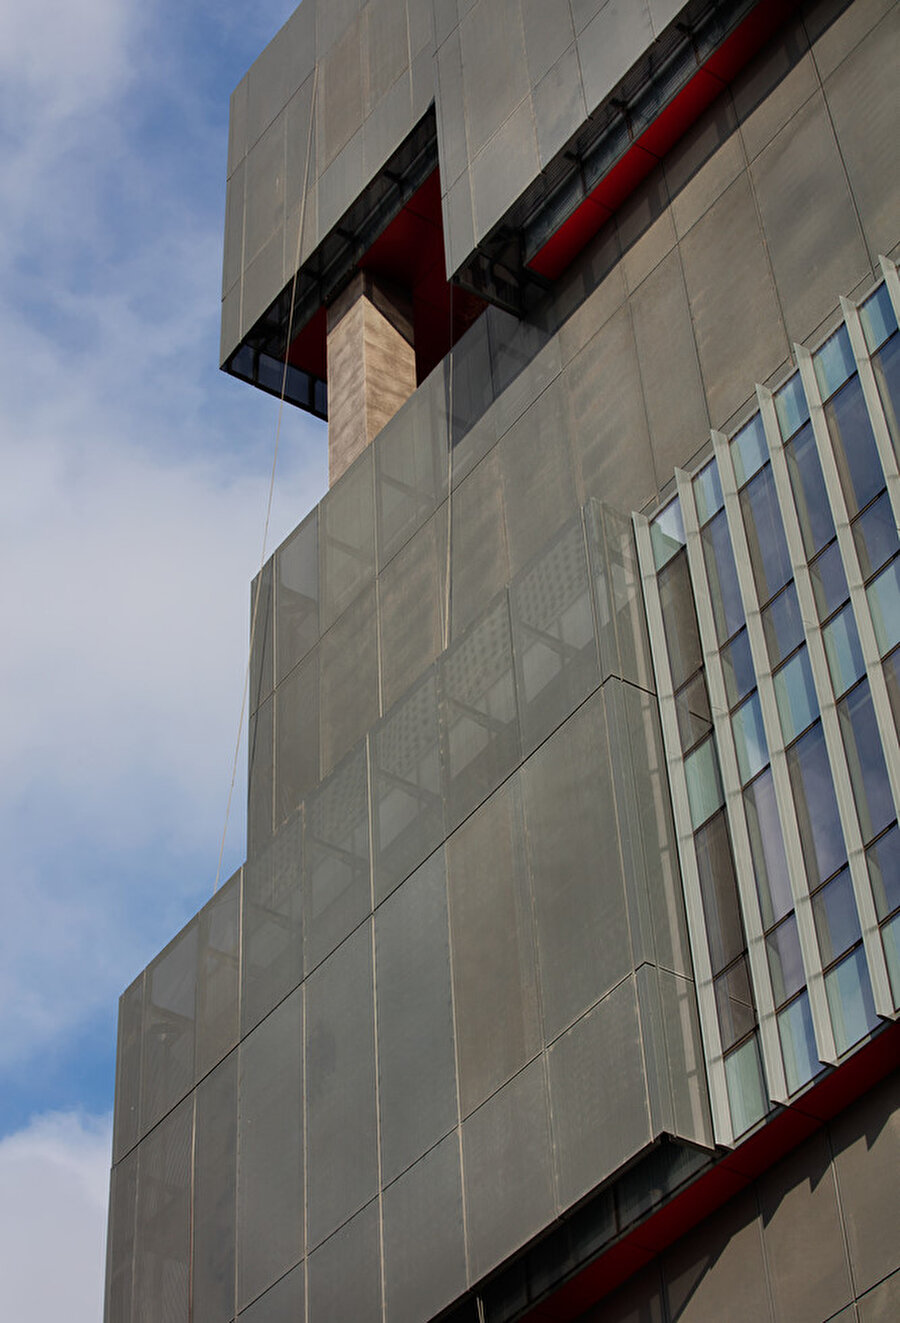 Alüminyum delikli levhalardan oluşan ikinci cephe, binaya yüksek teknolojiye sahip bir görüntü kazandırıyor.